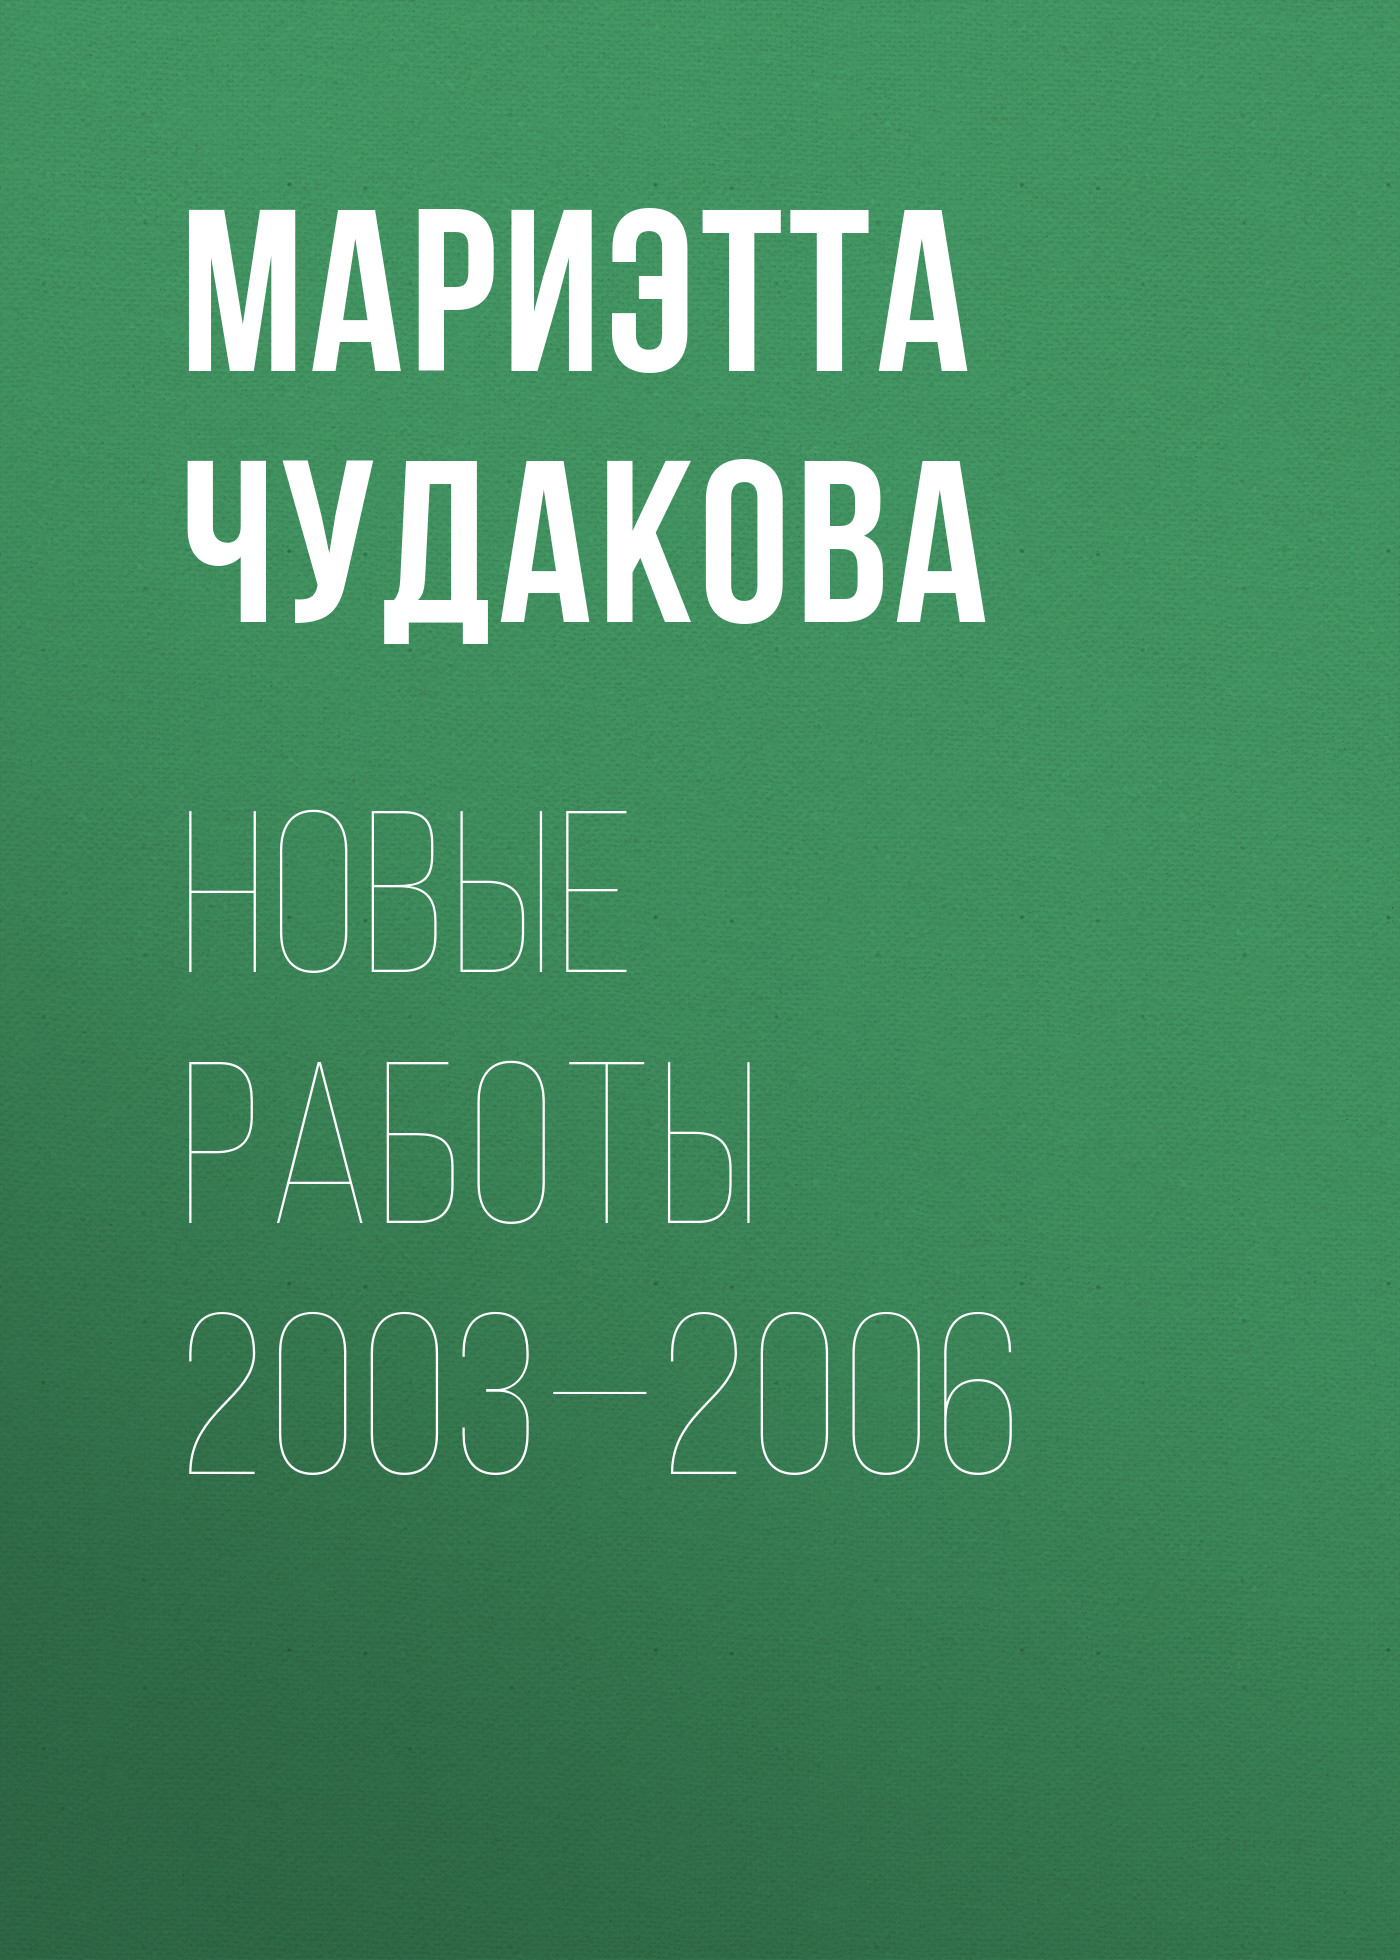 Книга Новые работы 2003—2006 из серии Диалог, созданная Мариэтта Чудакова, может относится к жанру Критика. Стоимость книги Новые работы 2003—2006  с идентификатором 180198 составляет 59.90 руб.